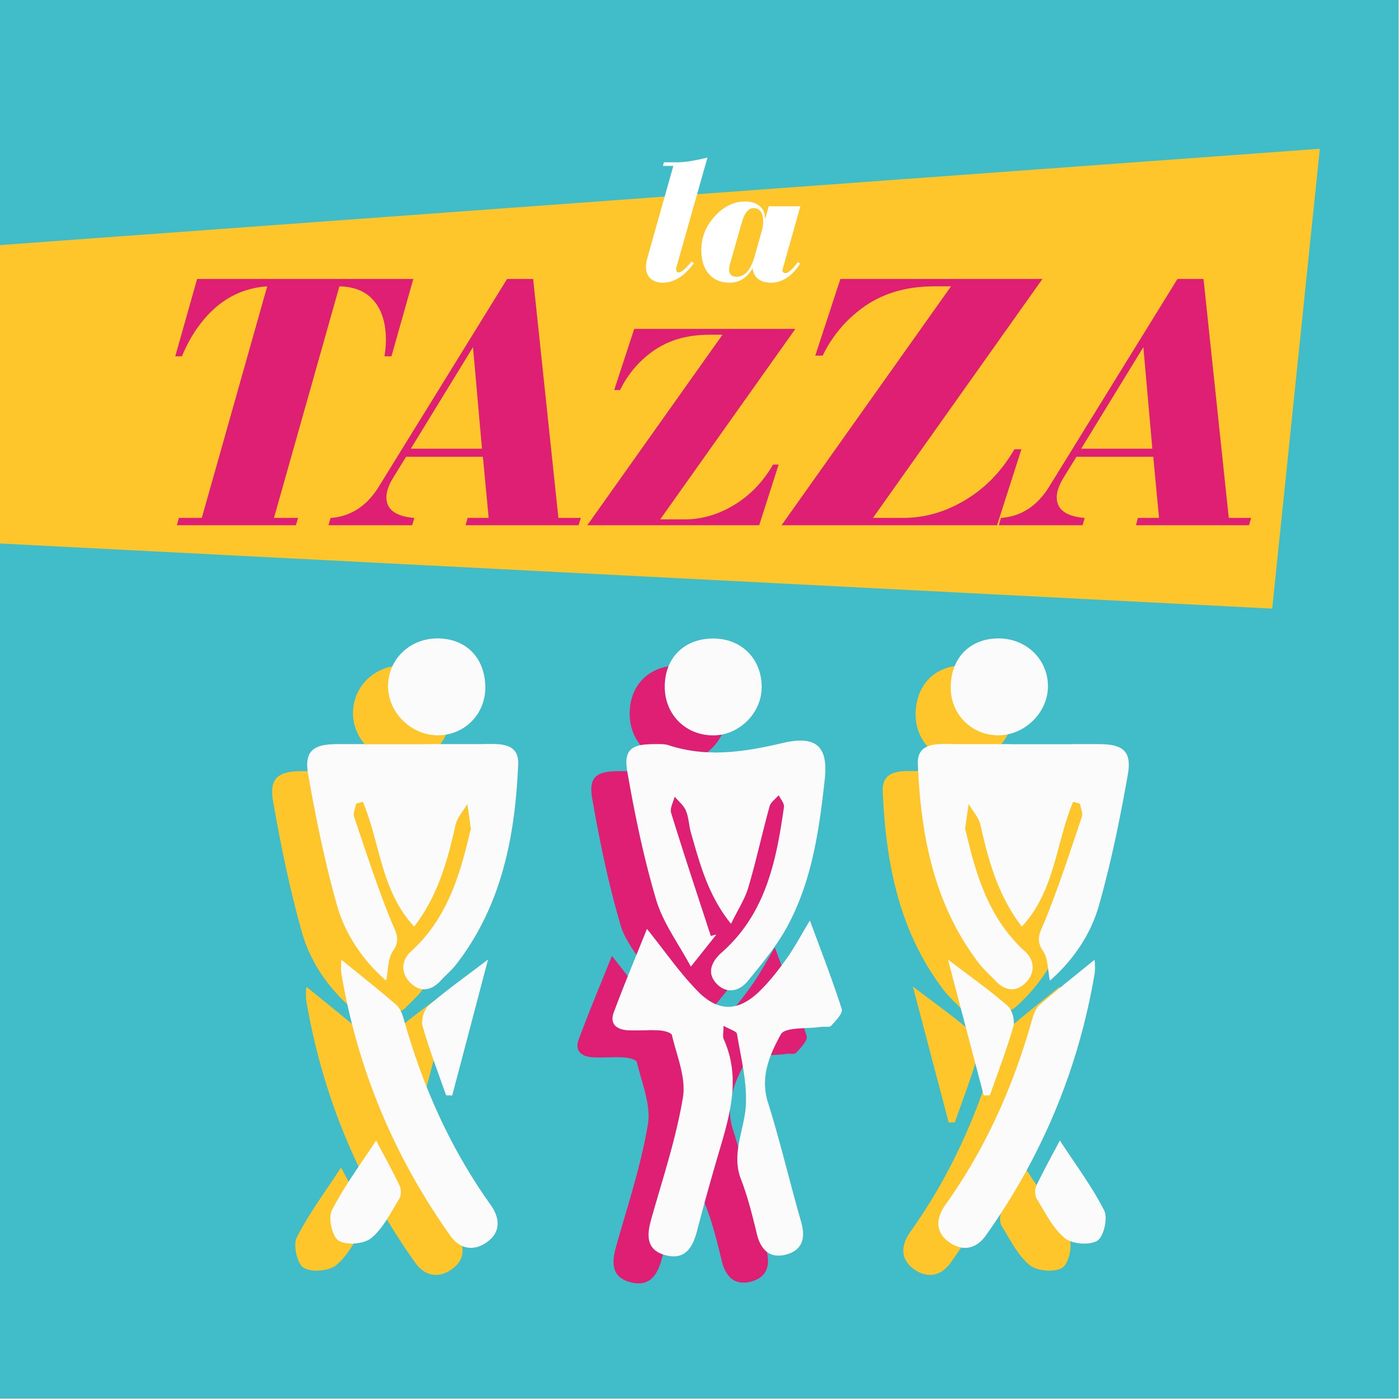 #31 La Tazza - The last sindrome dei Giapponesi